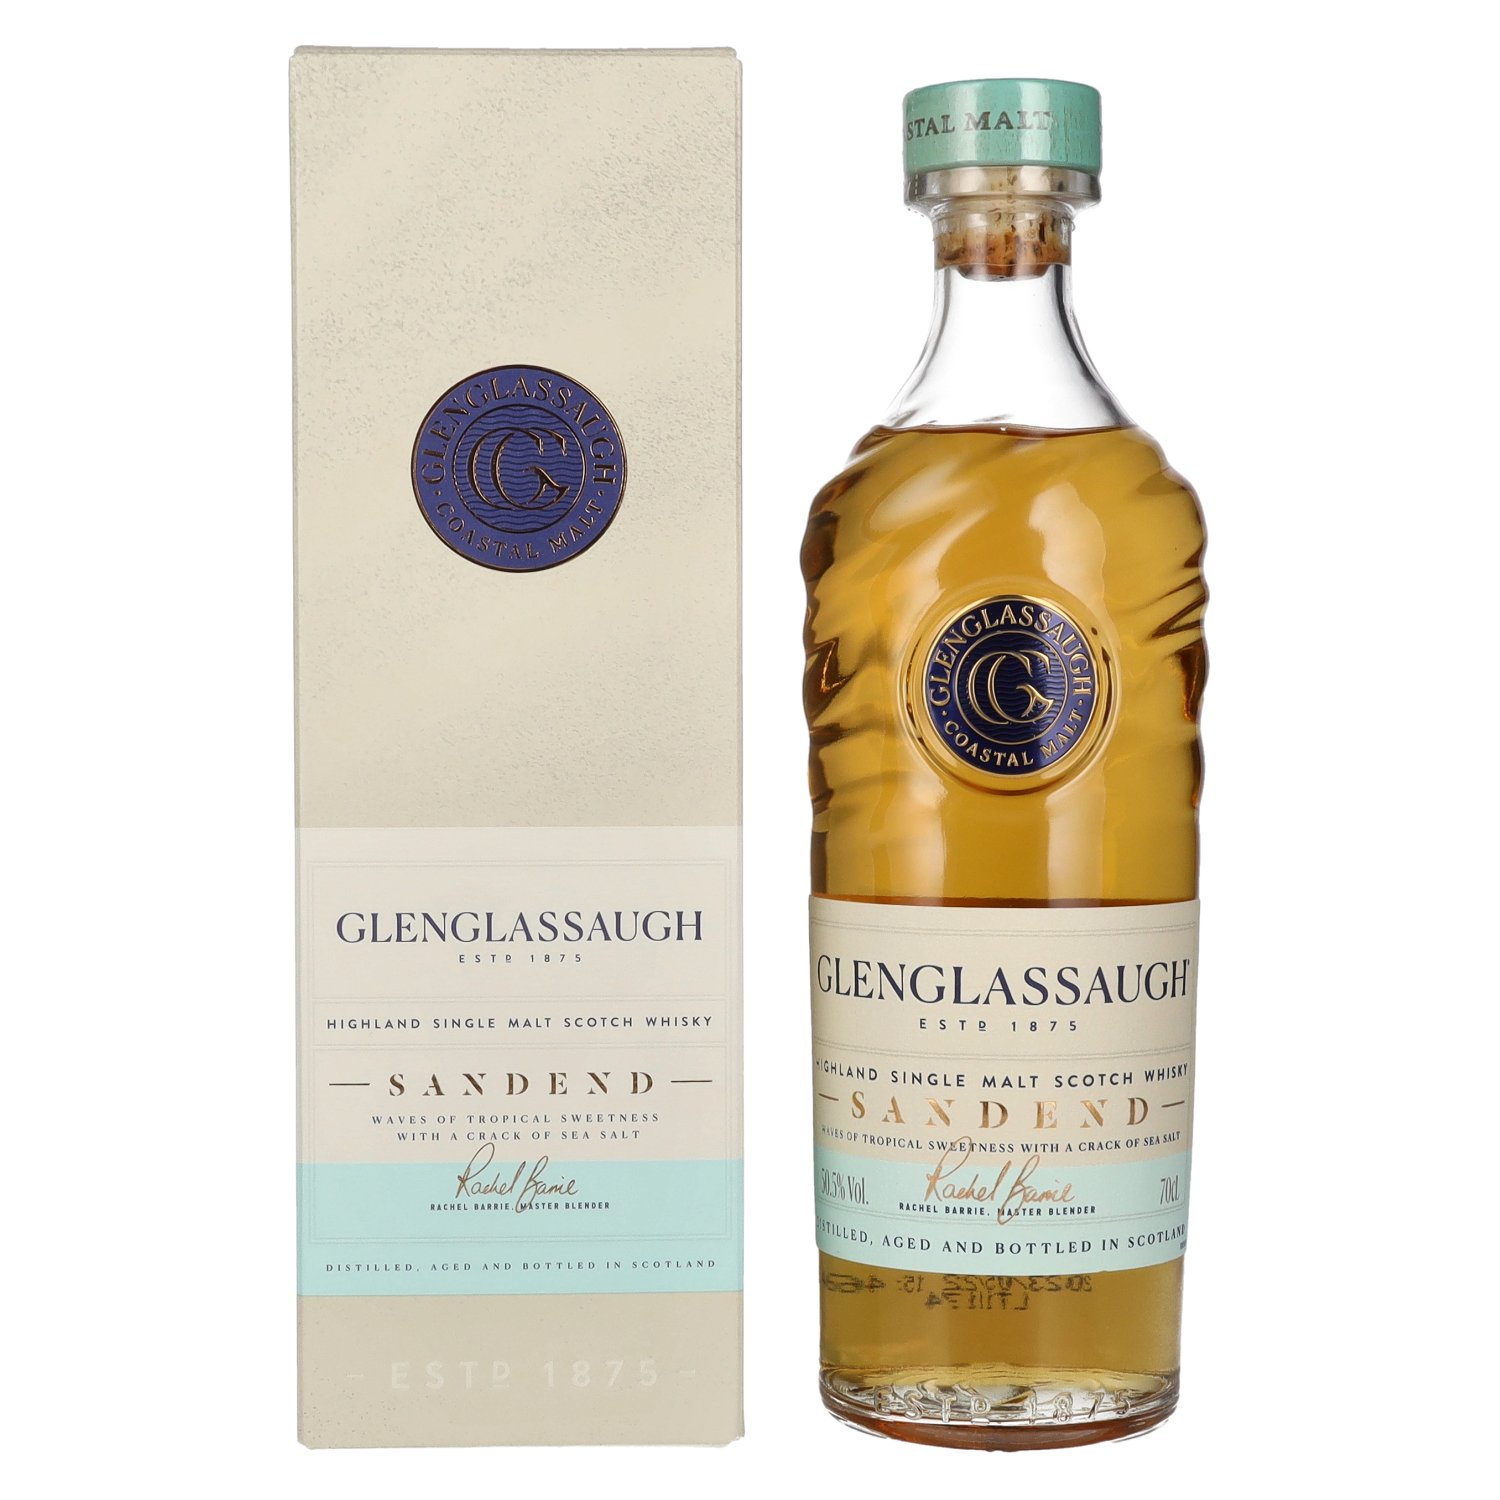 Glenglassaugh SANDEND Highland Single Malt Scotch Whisky 50,5% Vol